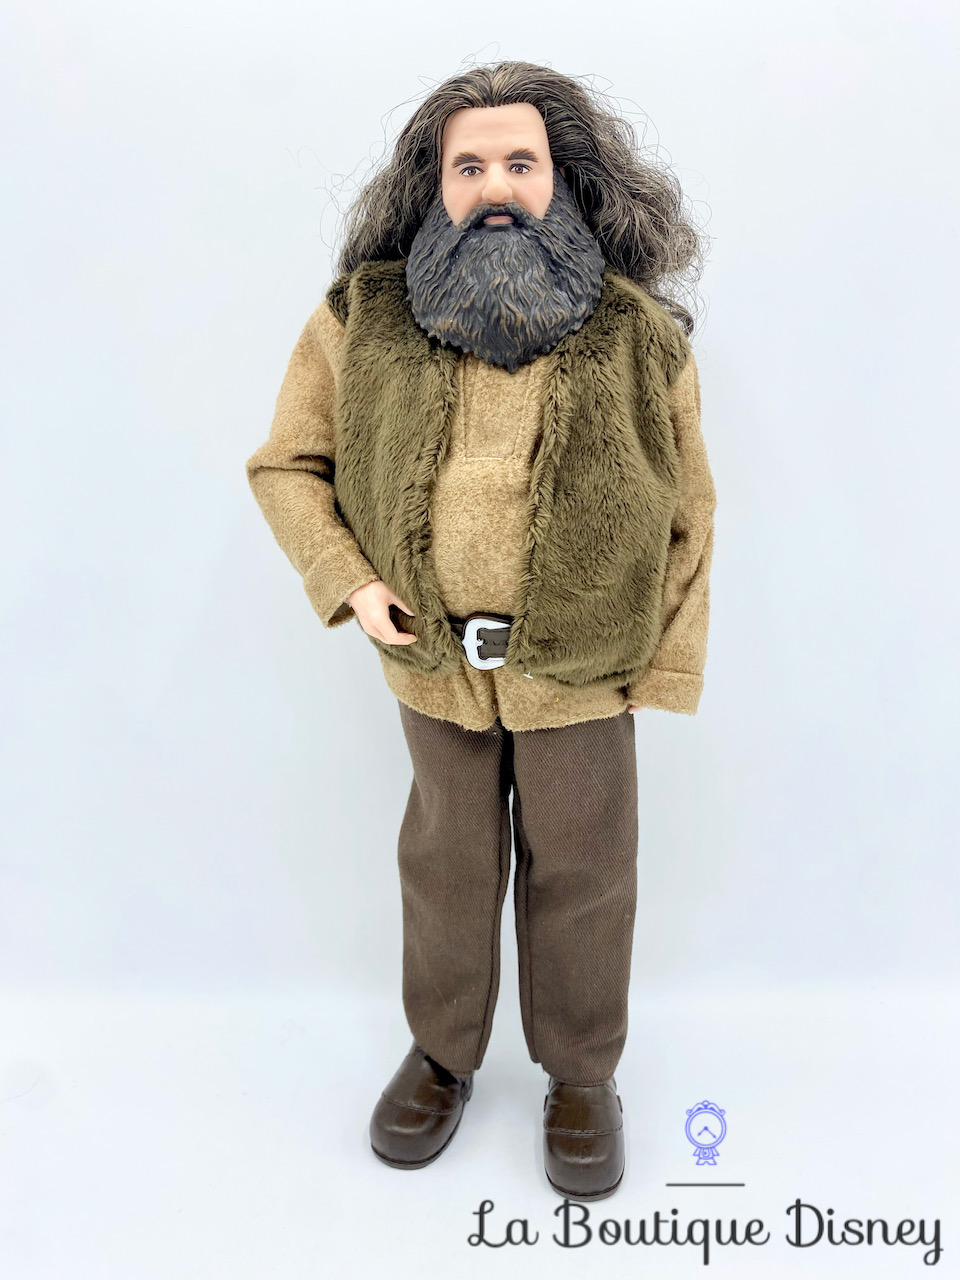 Poupée articulée Rubeus Hagrid Mattel 2019 Harry Potter géant garde chasse Poudlard